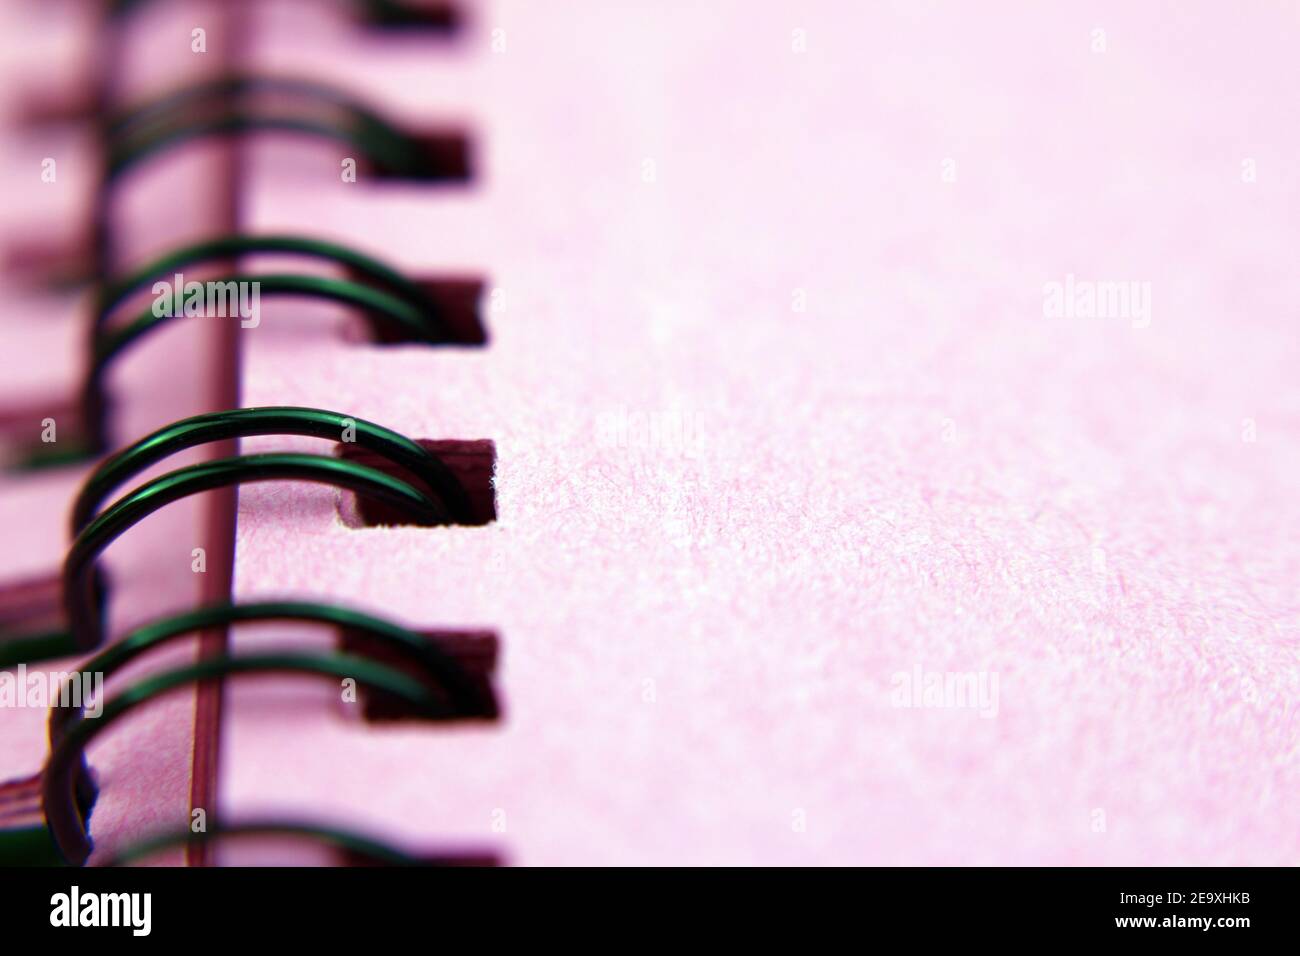 Spiral binder, pink notebook, foreground, desk background Stock Photo